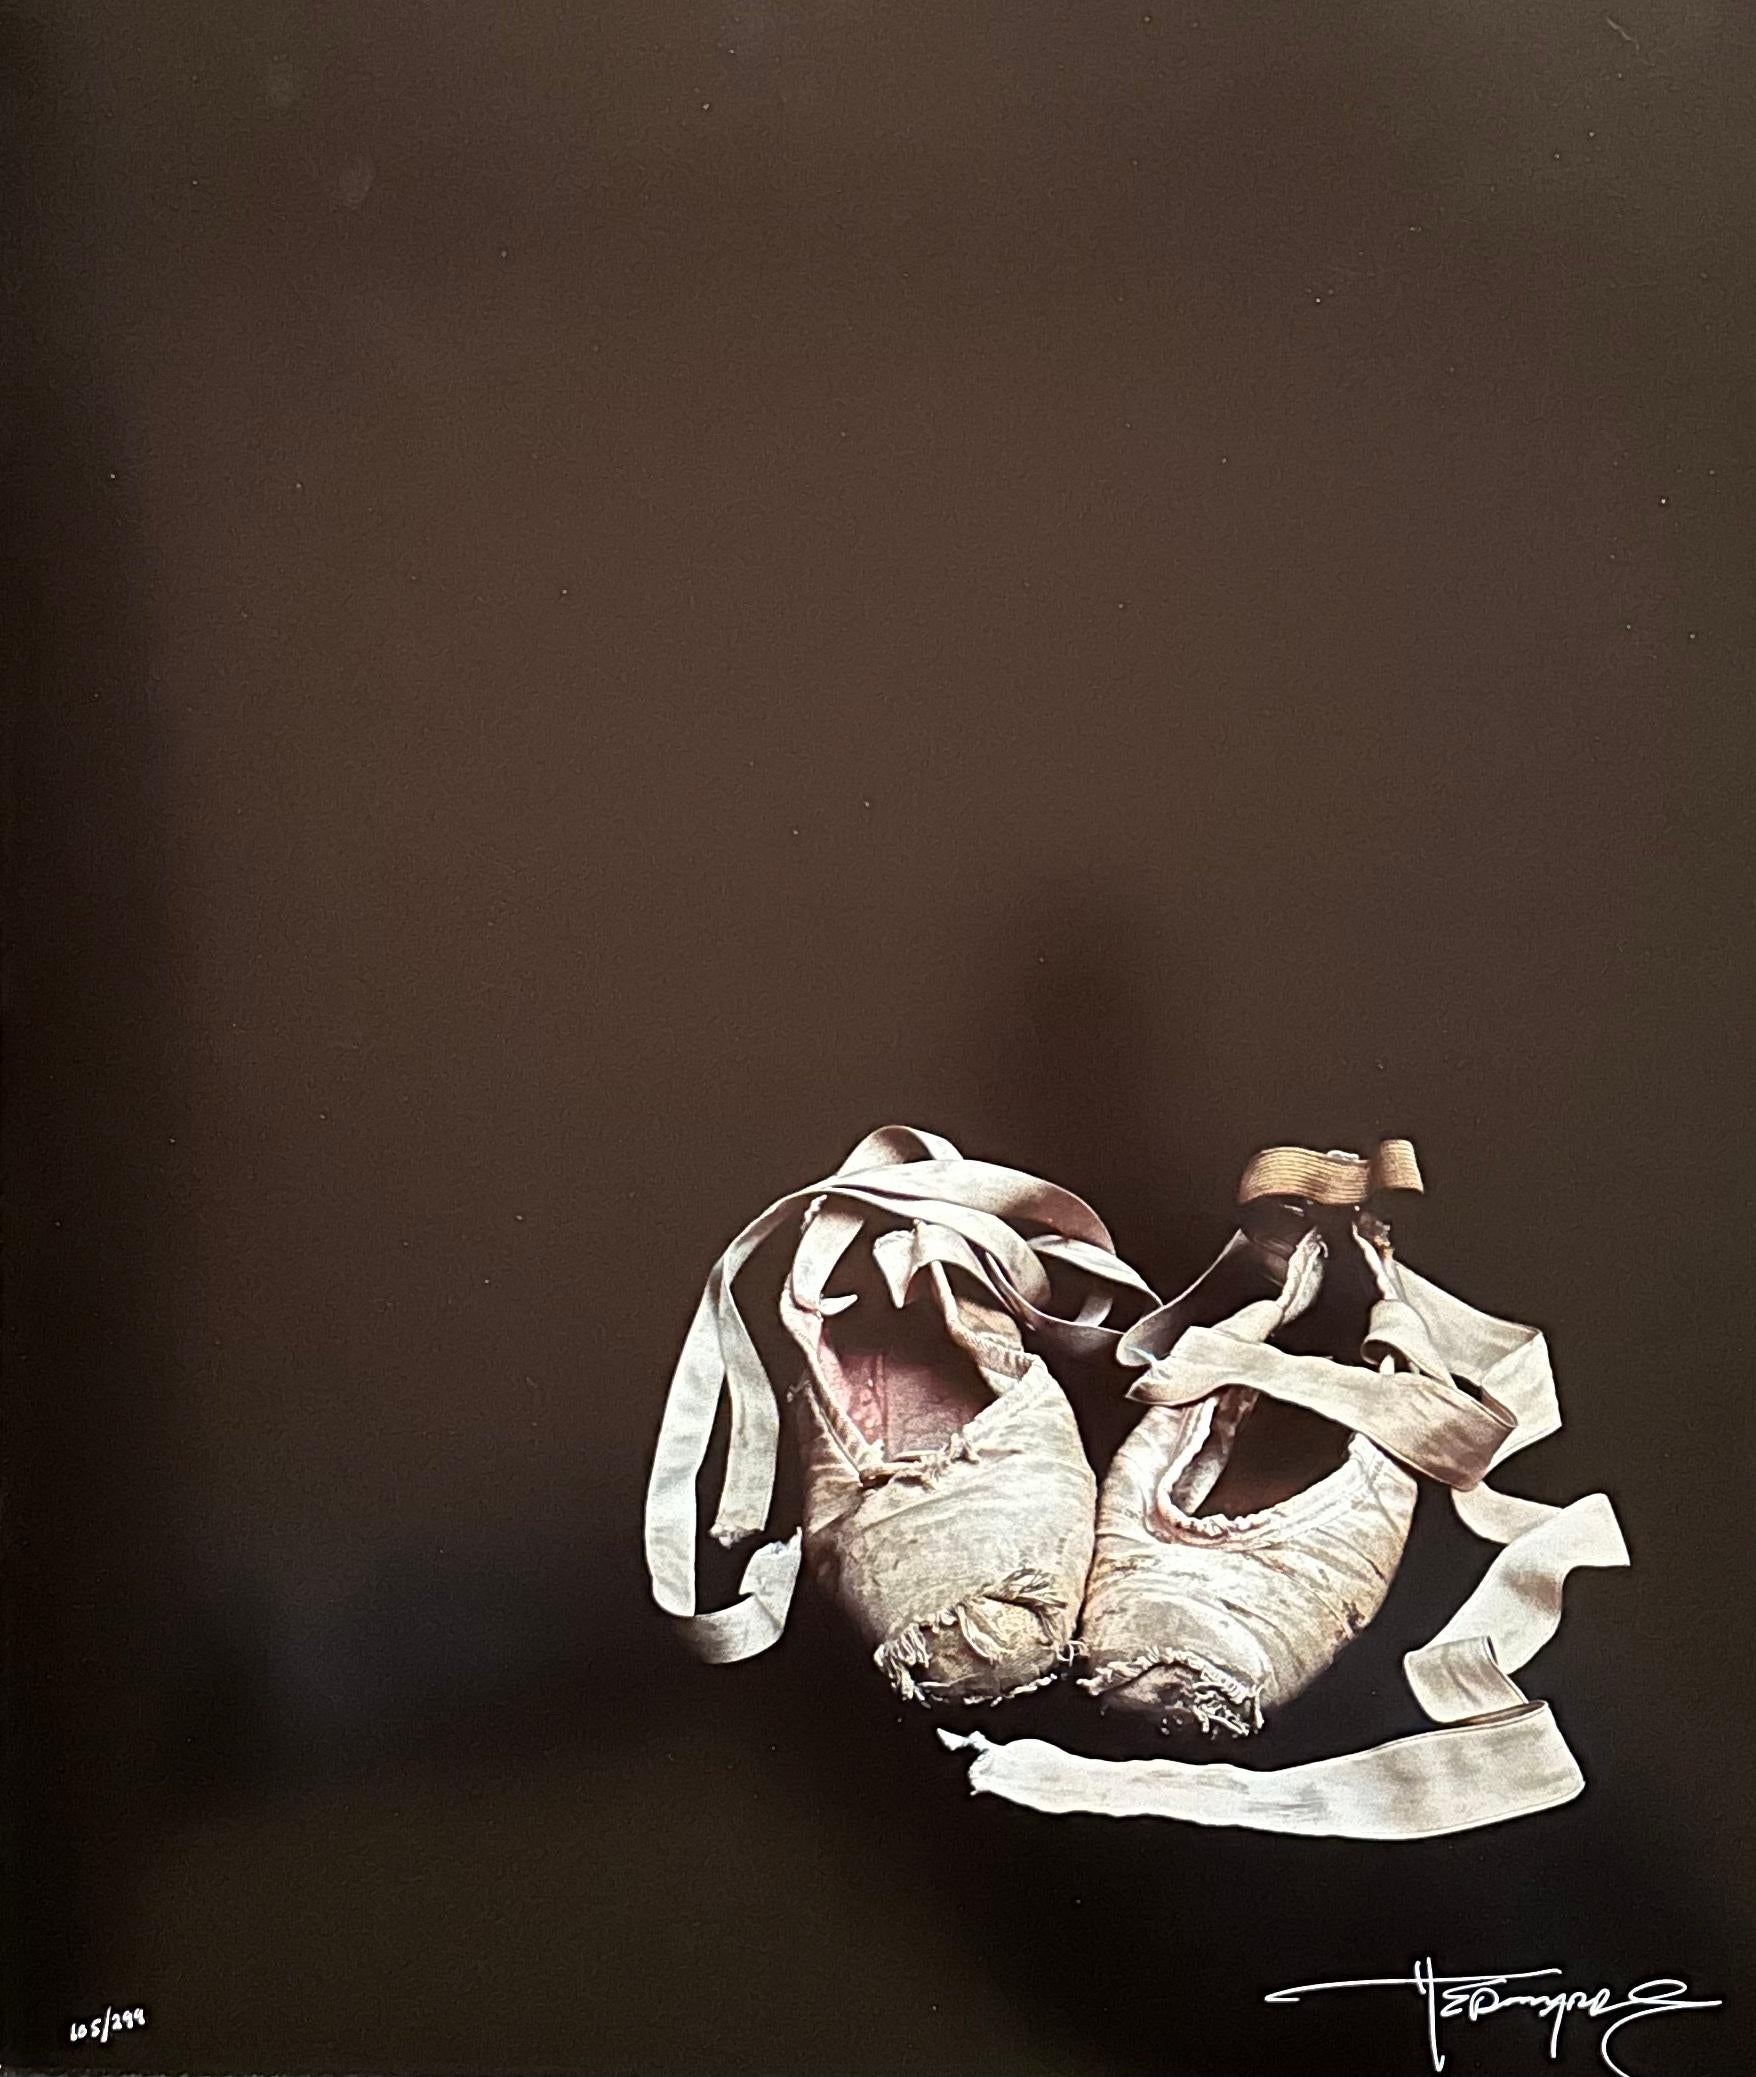 Harvey Edwards
Ballettpantoffeln
1979 
Vom Künstler handsigniert
Silberfarbstoff-Bleichdruck (Cibachrome)
Nummeriert 105/299

*ungerahmt*